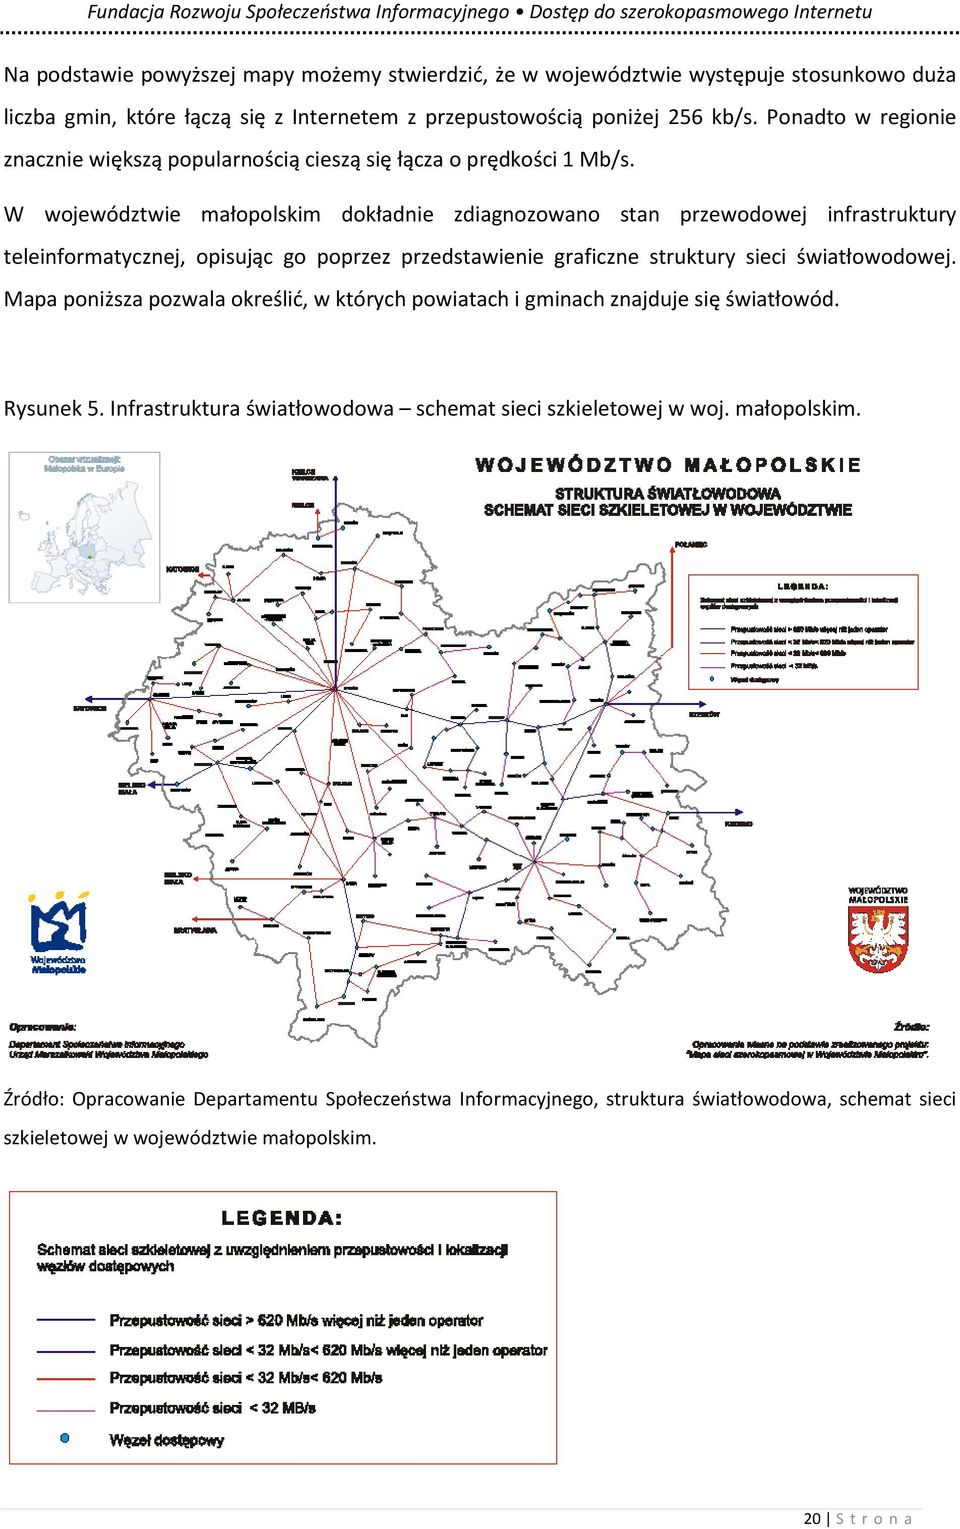 W województwie małopolskim dokładnie zdiagnozowano stan przewodowej infrastruktury teleinformatycznej, opisując go poprzez przedstawienie graficzne struktury sieci światłowodowej.